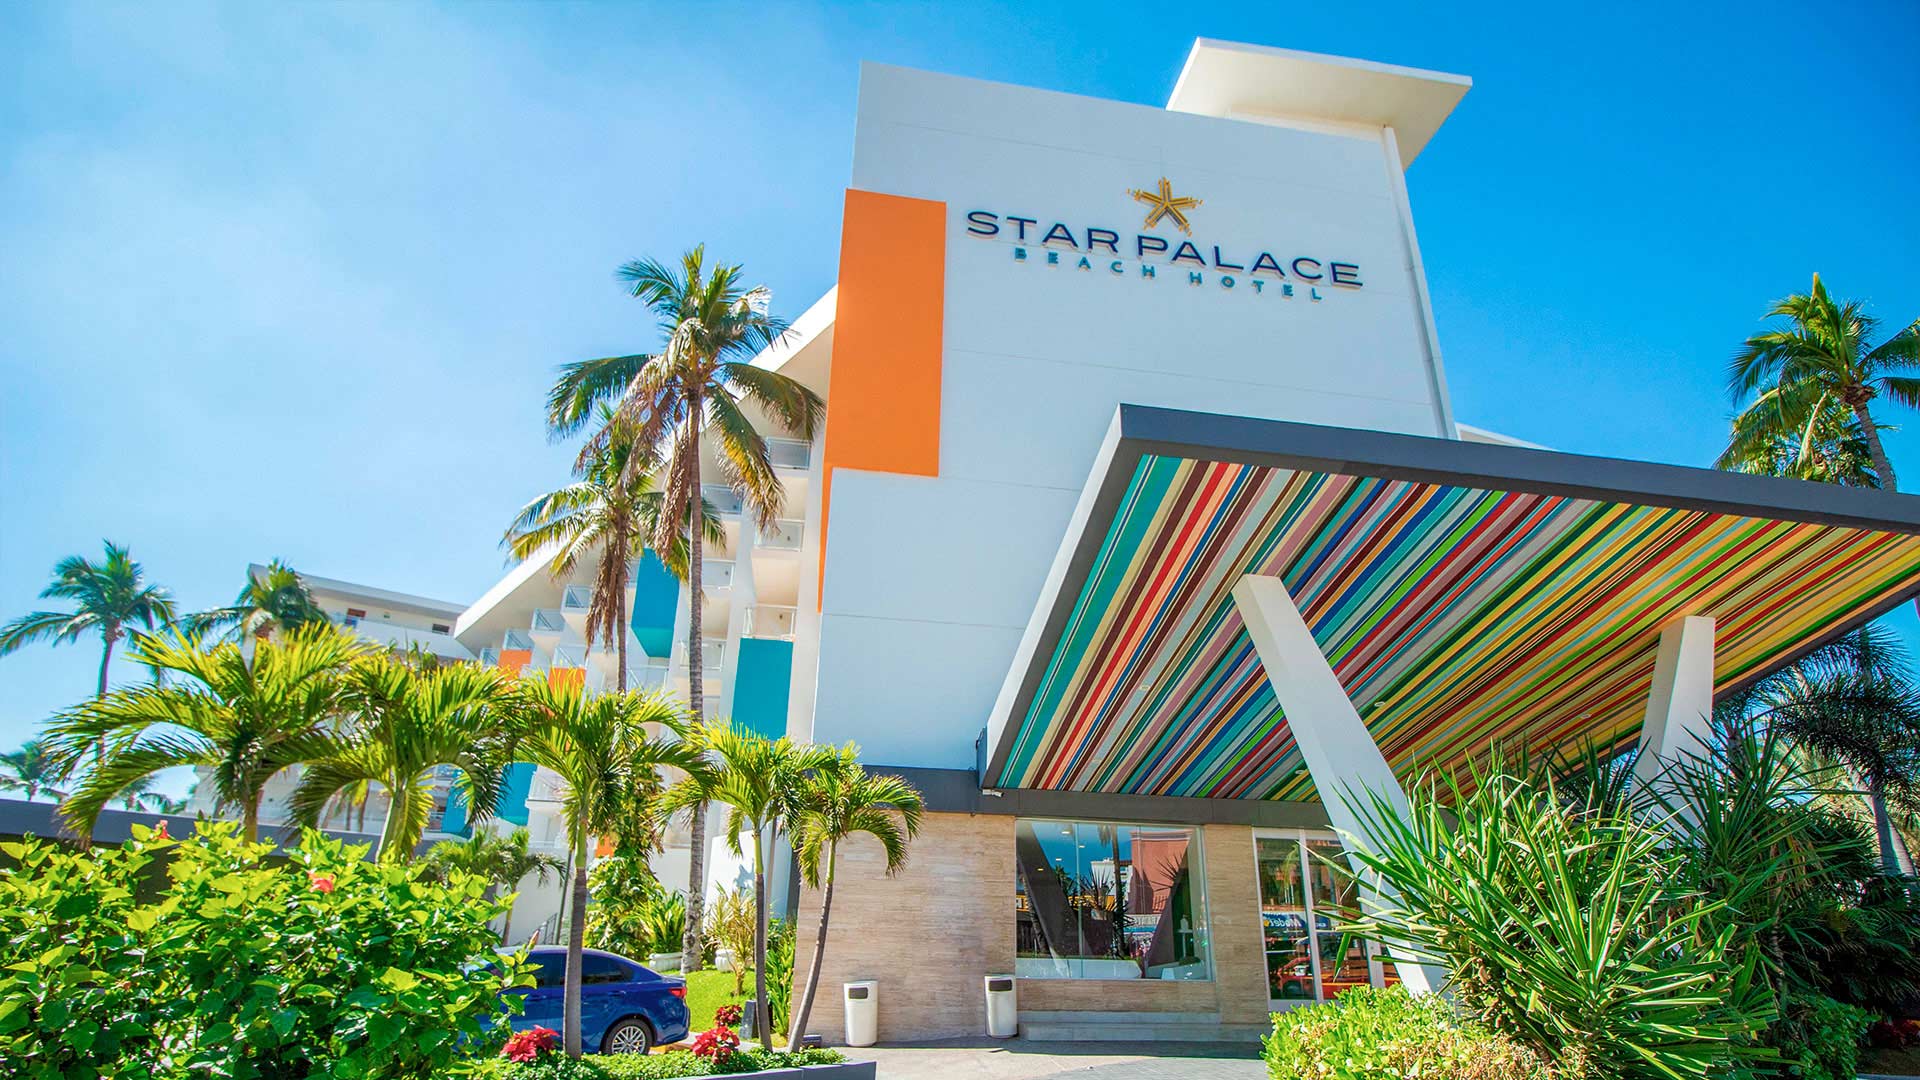 Fachada Hotel Star Palce Mazatlan Sinaloa